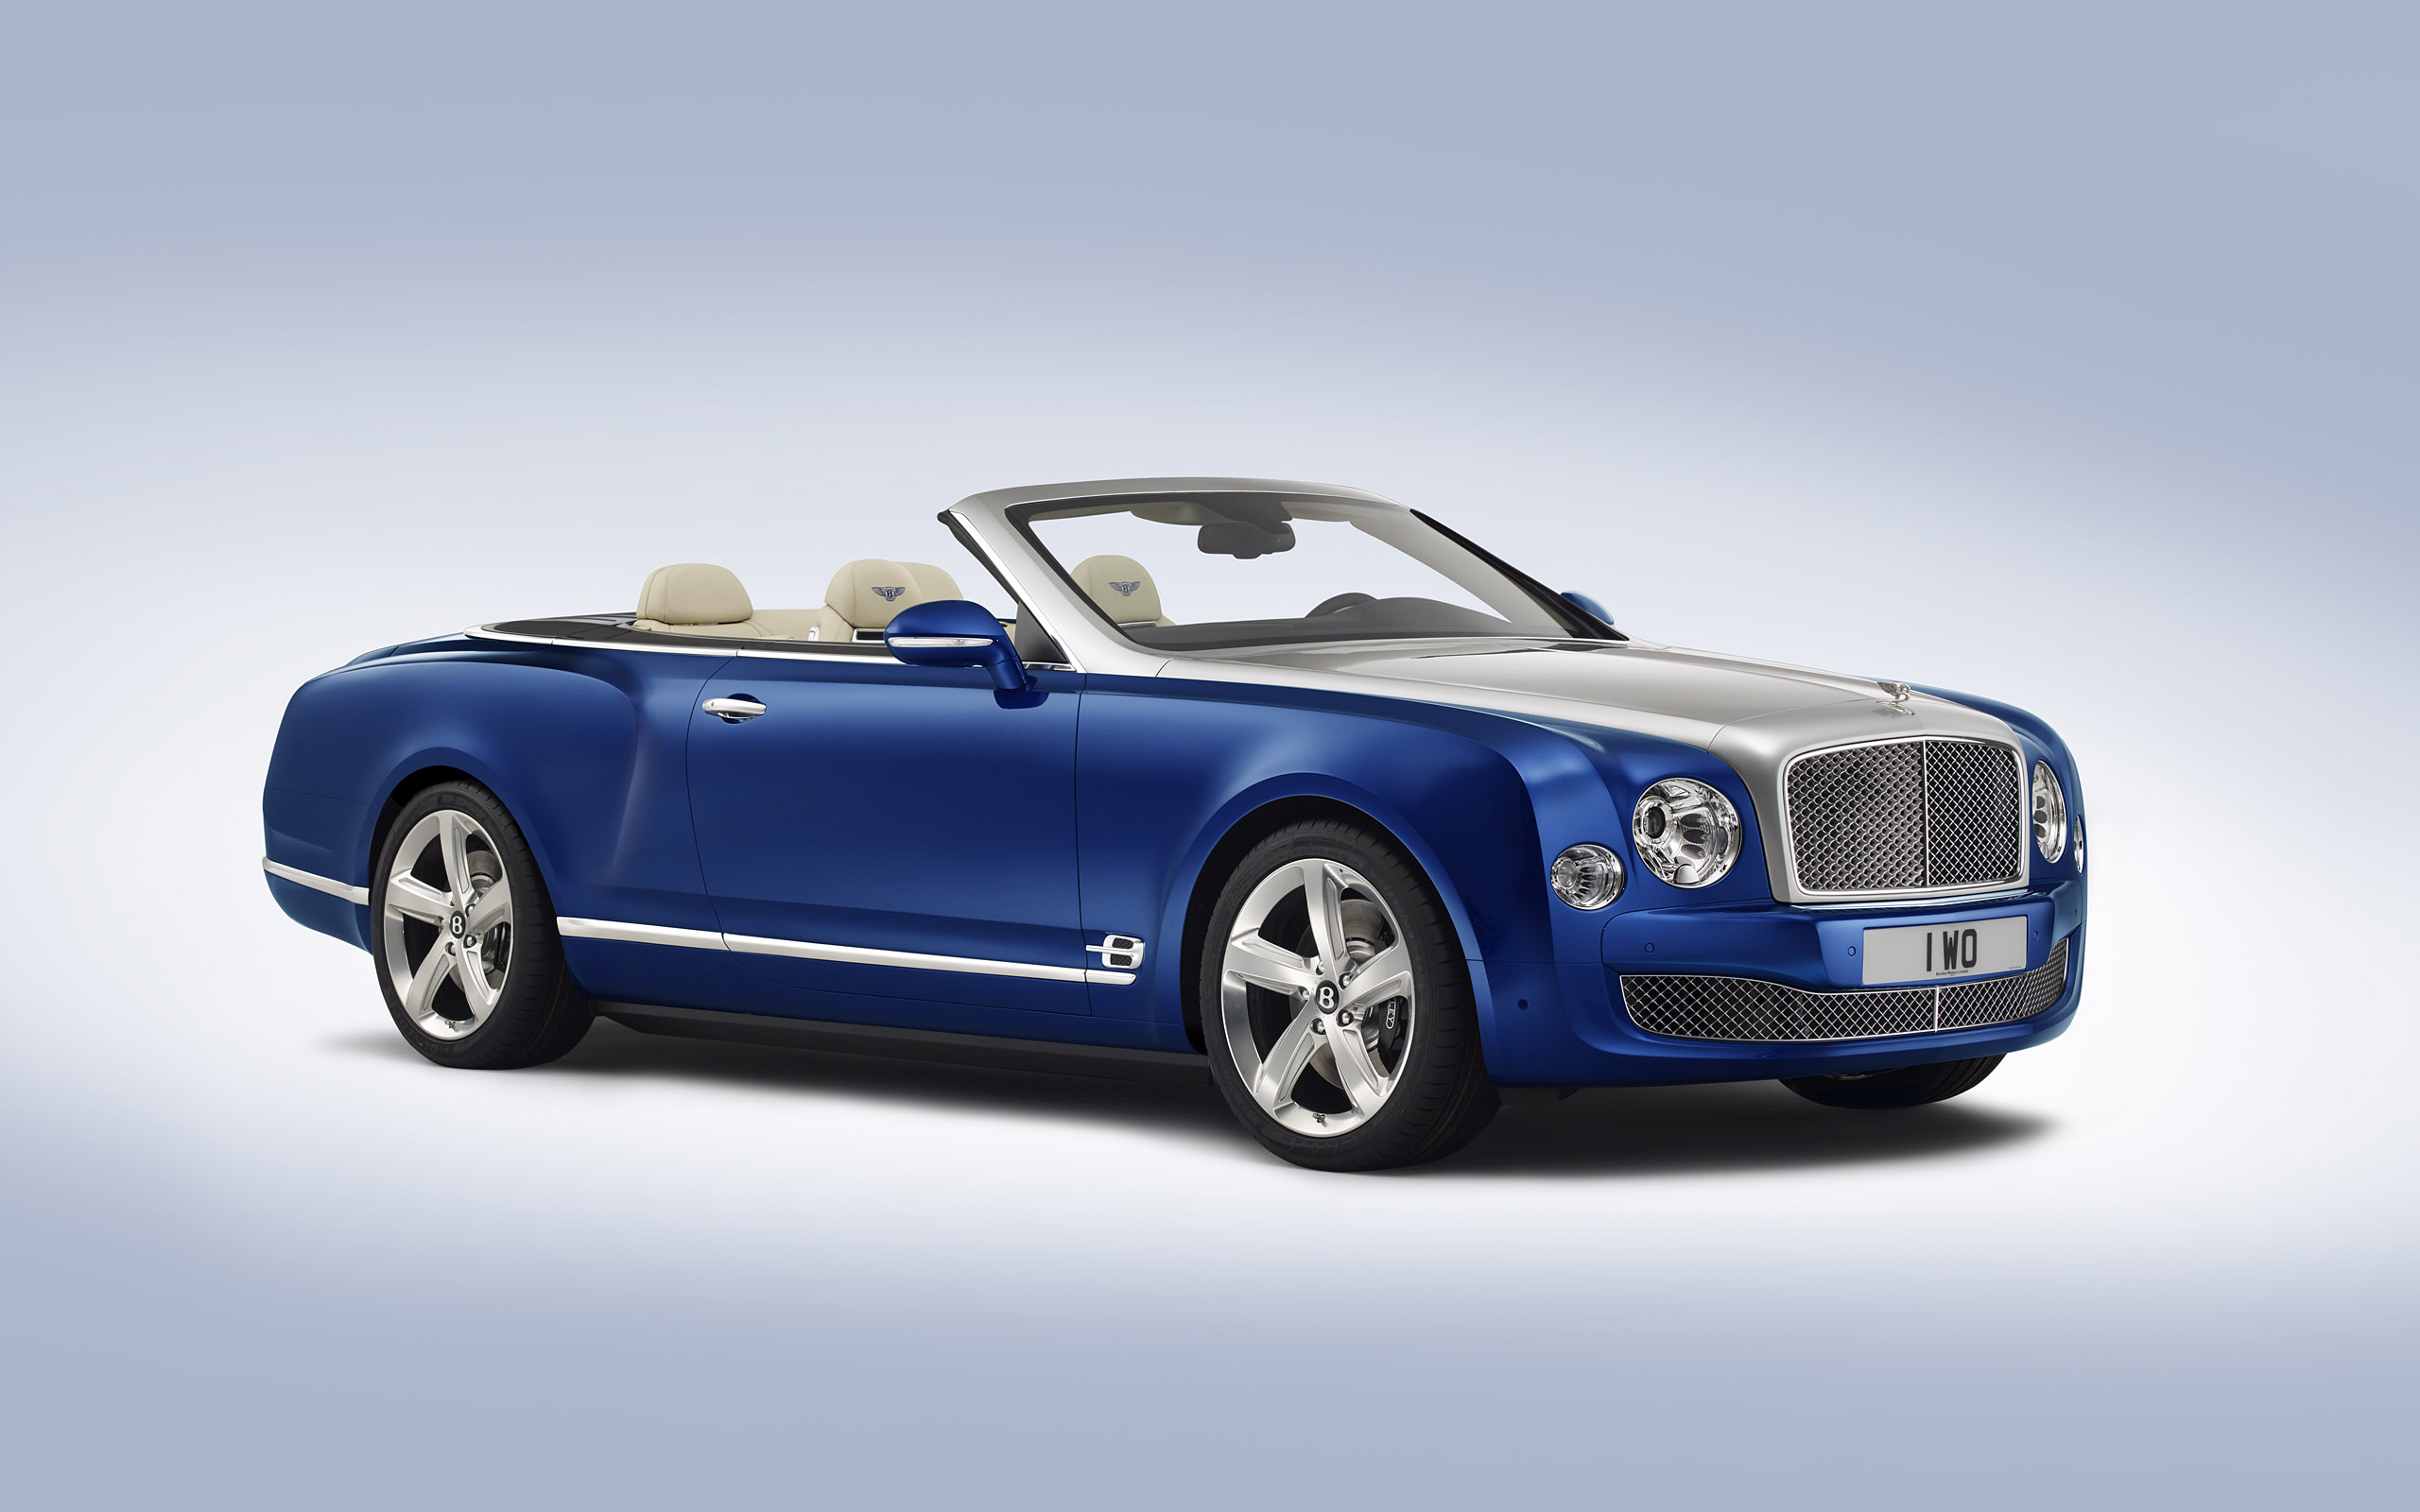 Télécharger des fonds d'écran Bentley Grand Cabriolet Concept HD